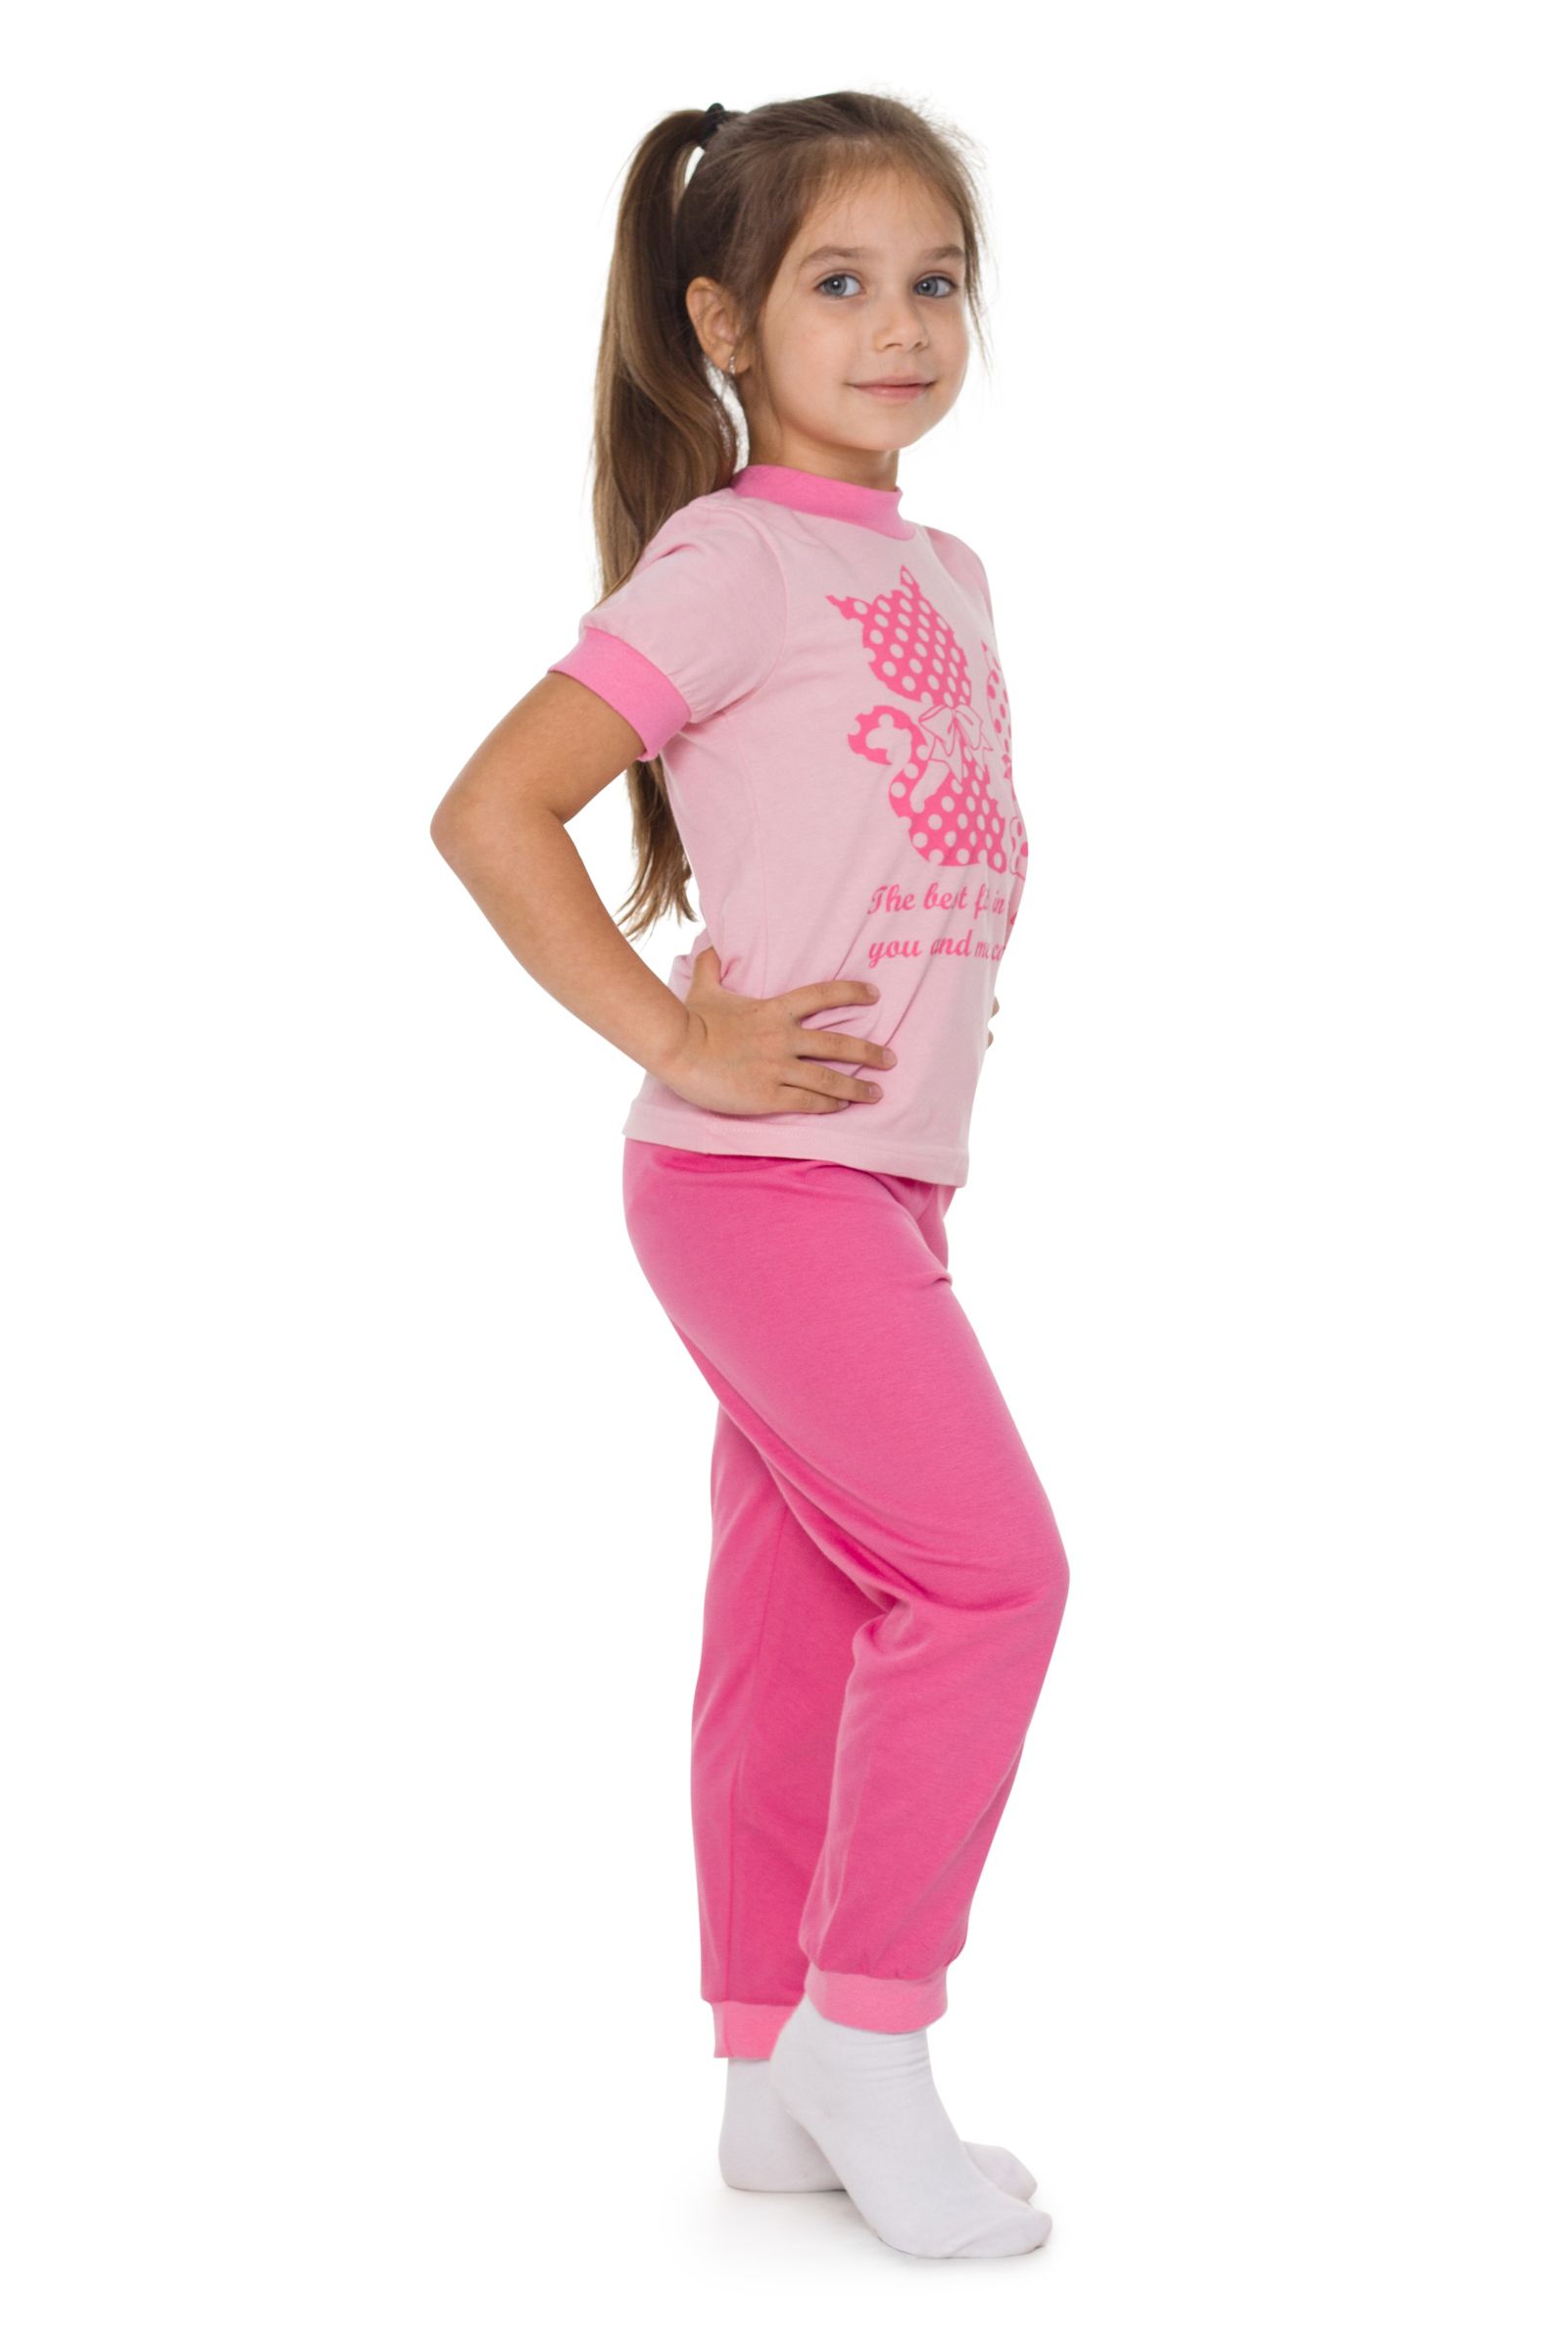 Пижама-ПЖ02-2234 оптом от производителя детской одежды 'Алёна'